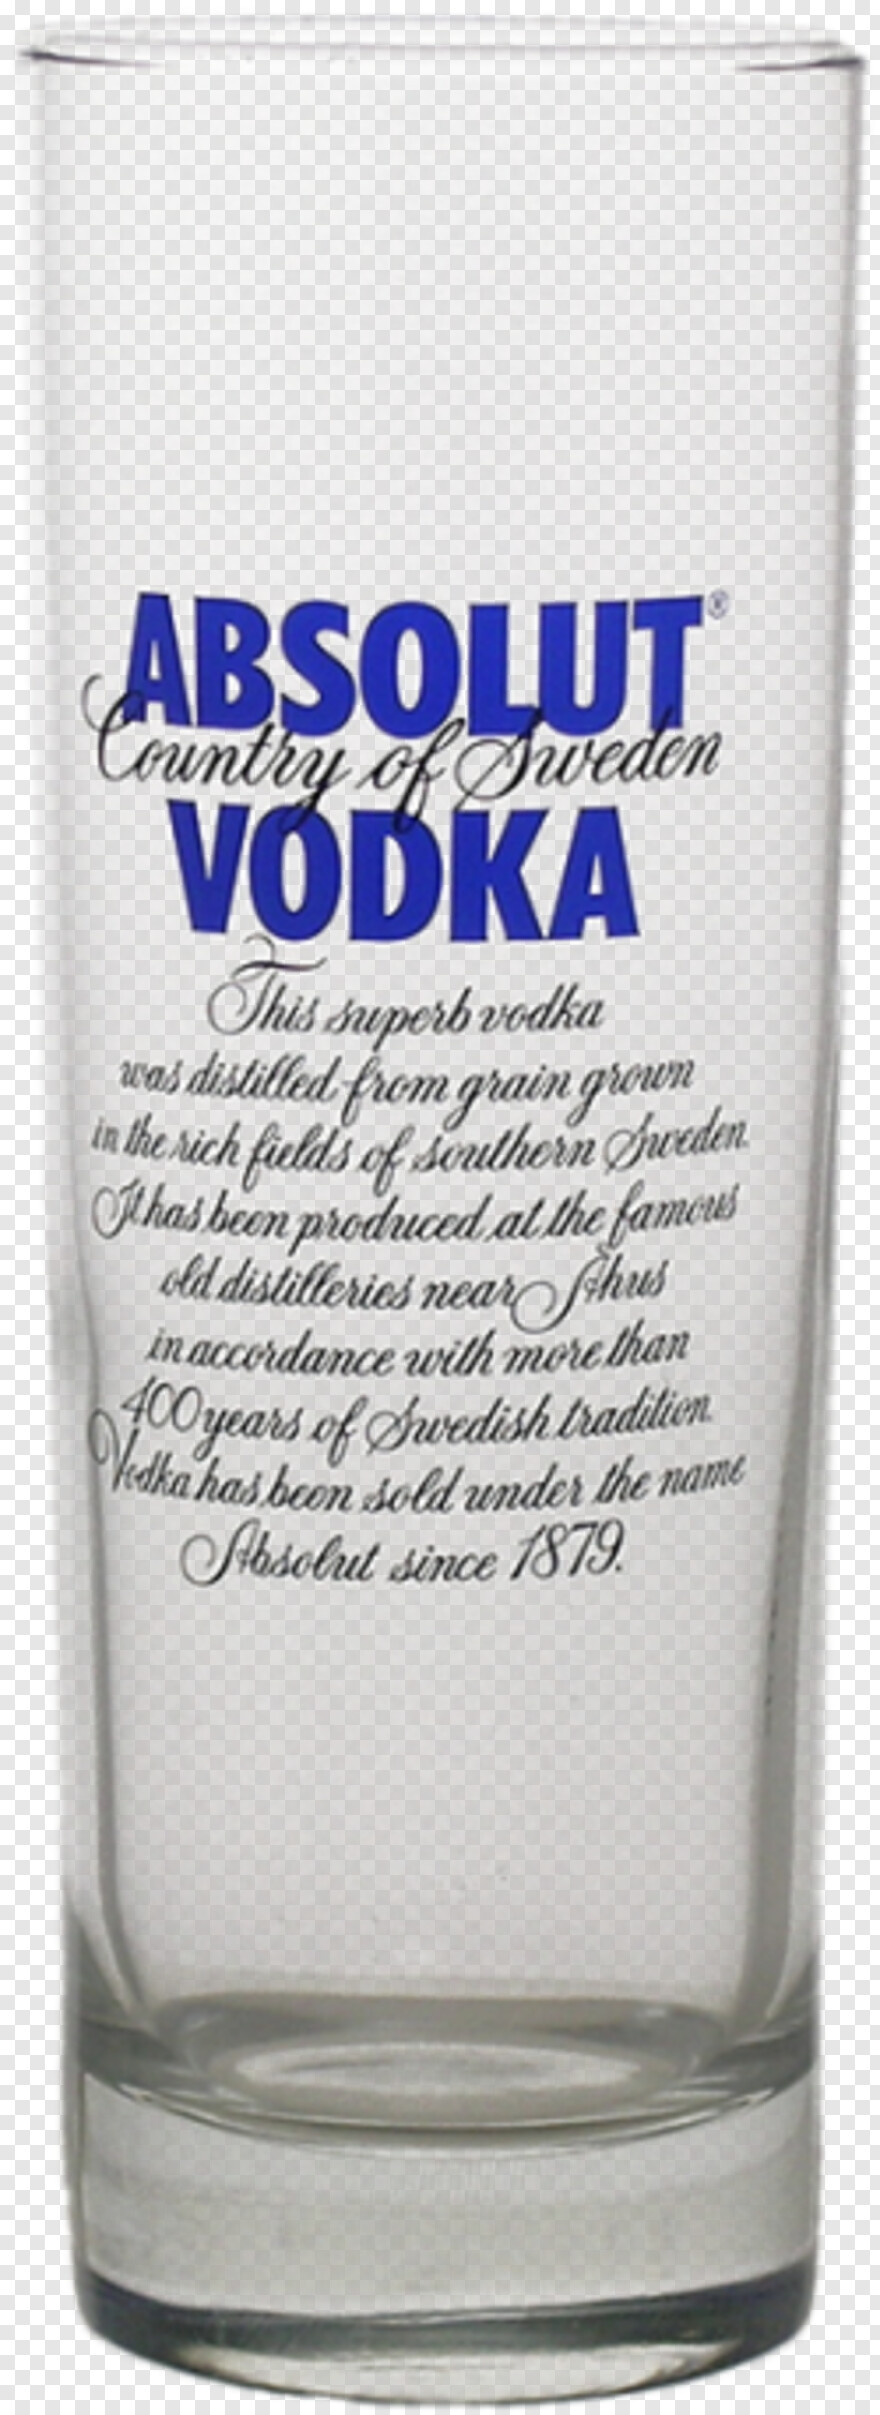 vodka # 912436